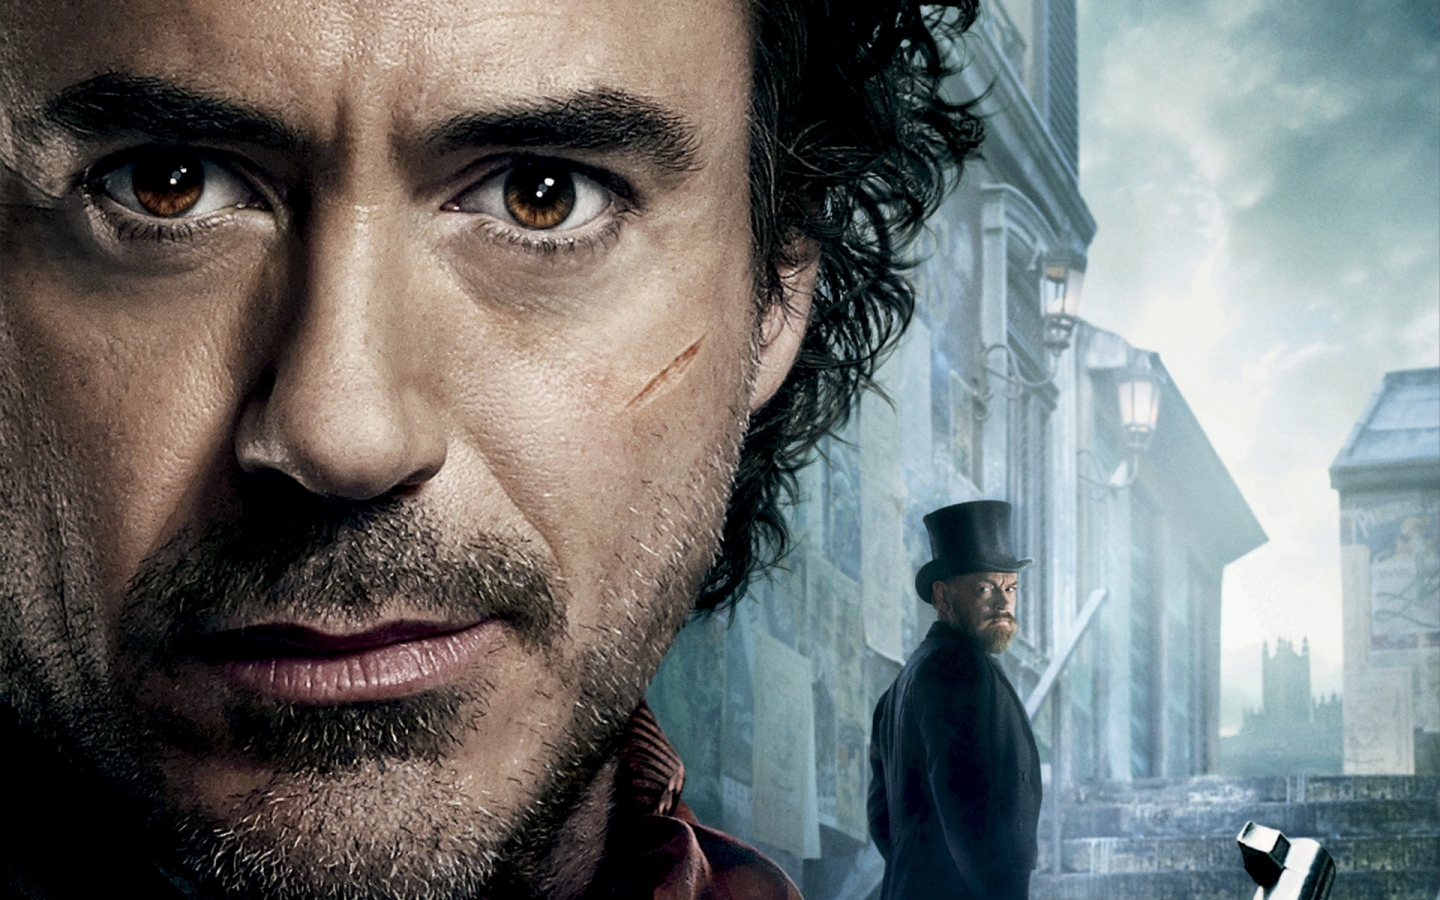 Robert Downey Jr Sherlock Holmes 2 for 1440 x 900 widescreen resolution